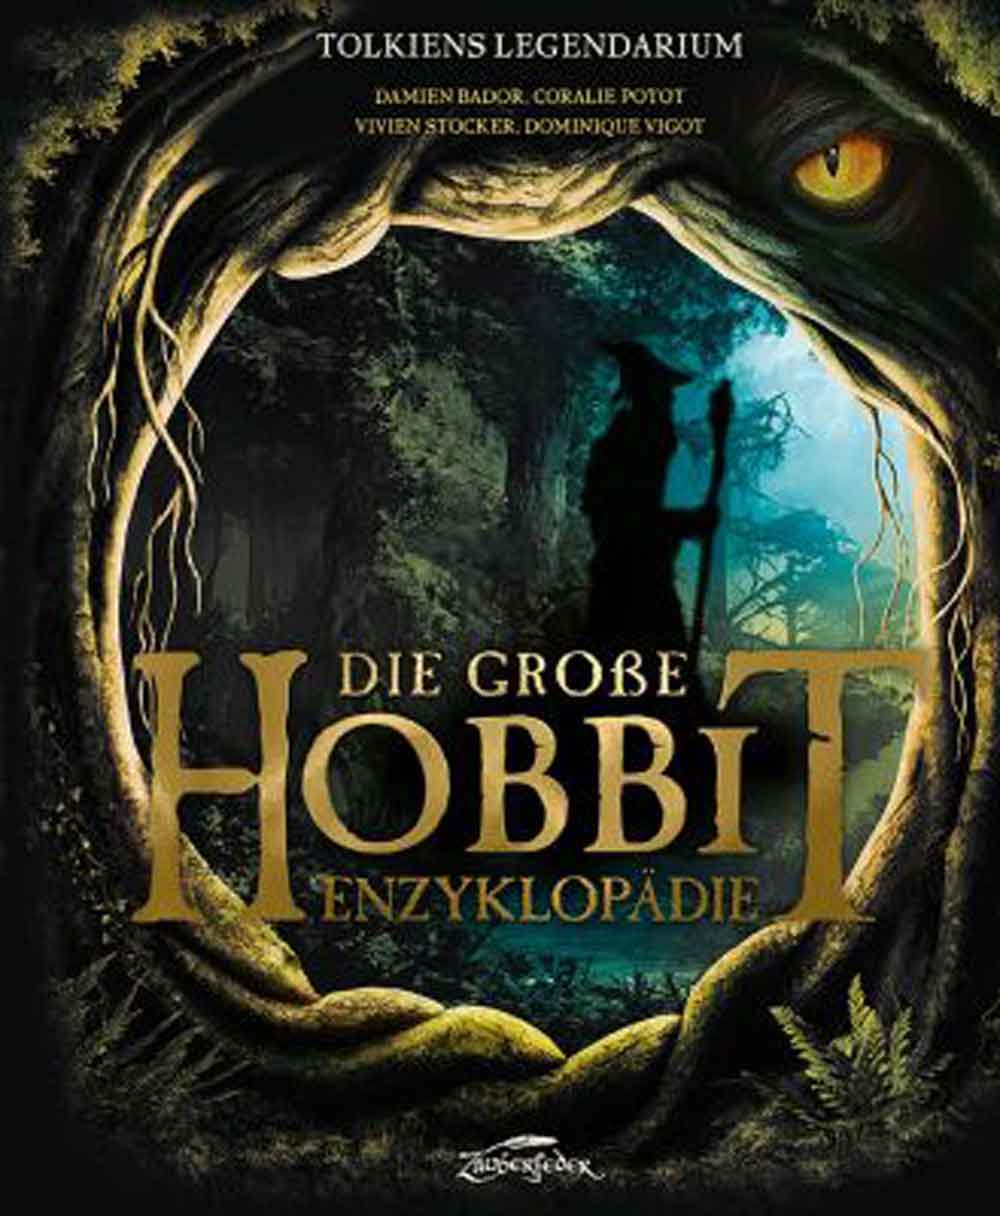 Lesetipps für Gütersloh: »Tolkiens Legendarium – die große Hobbit Enzyklopädie«